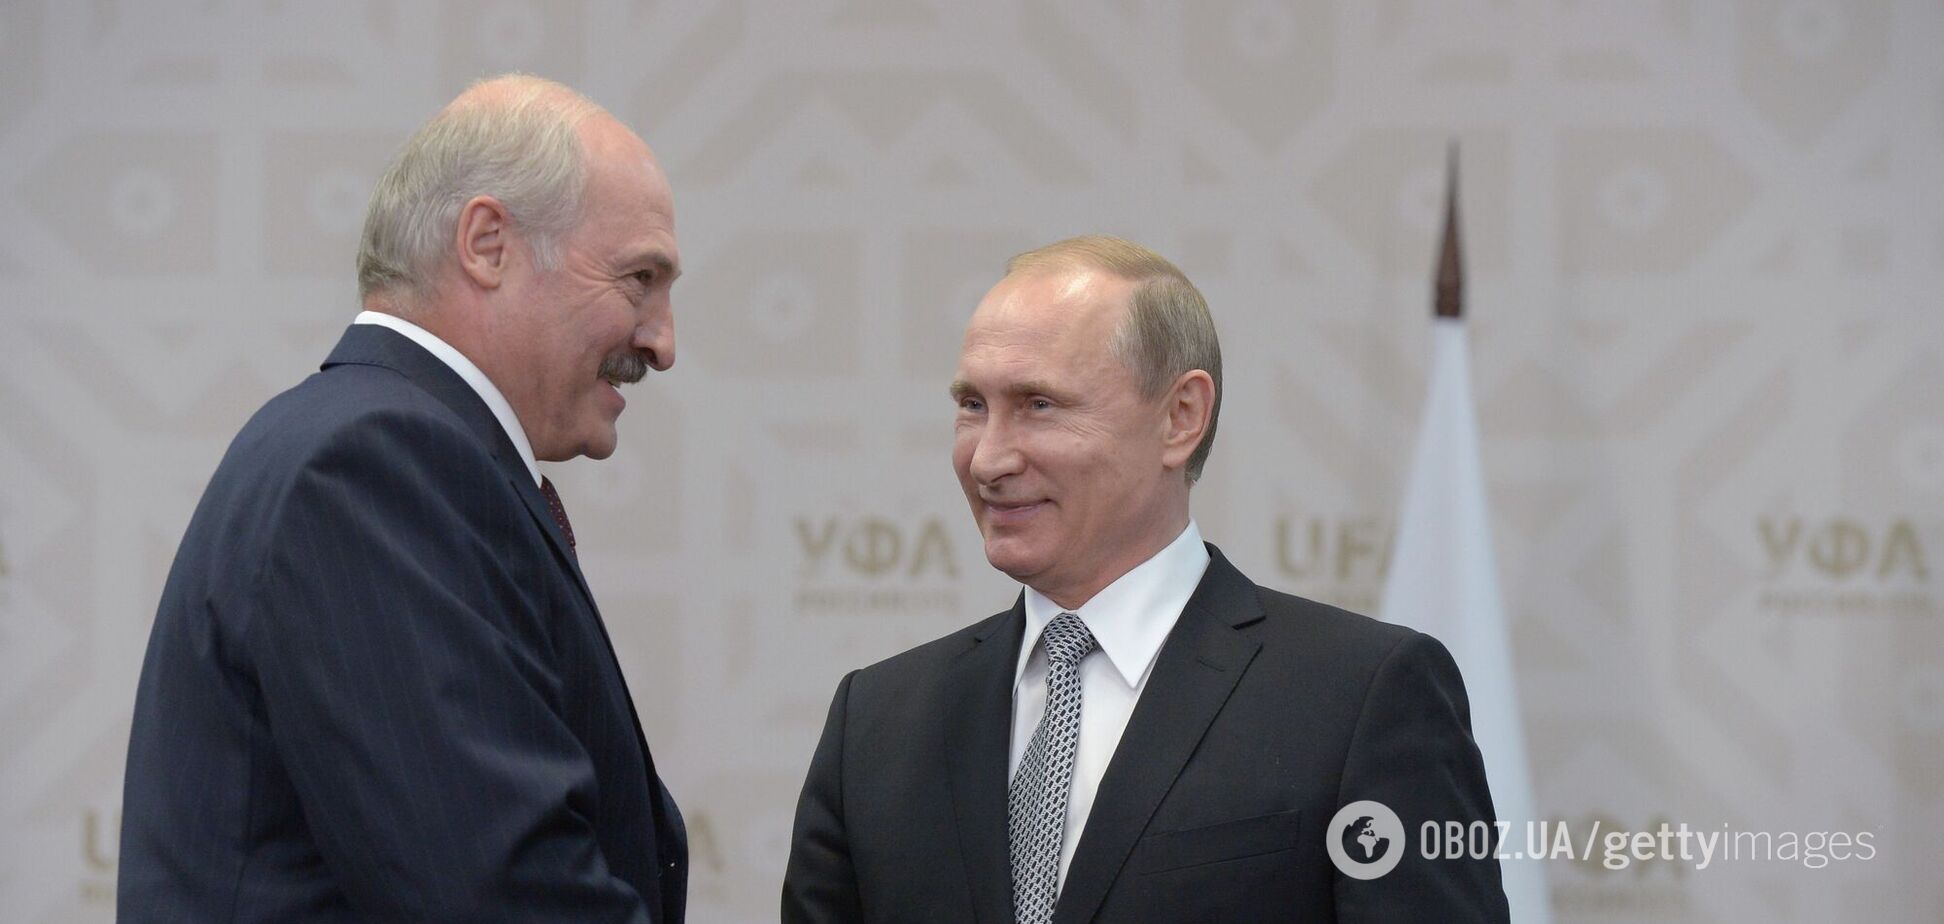 Обращение Лукашенко к Путину расценили как угрозу нацбезопасности